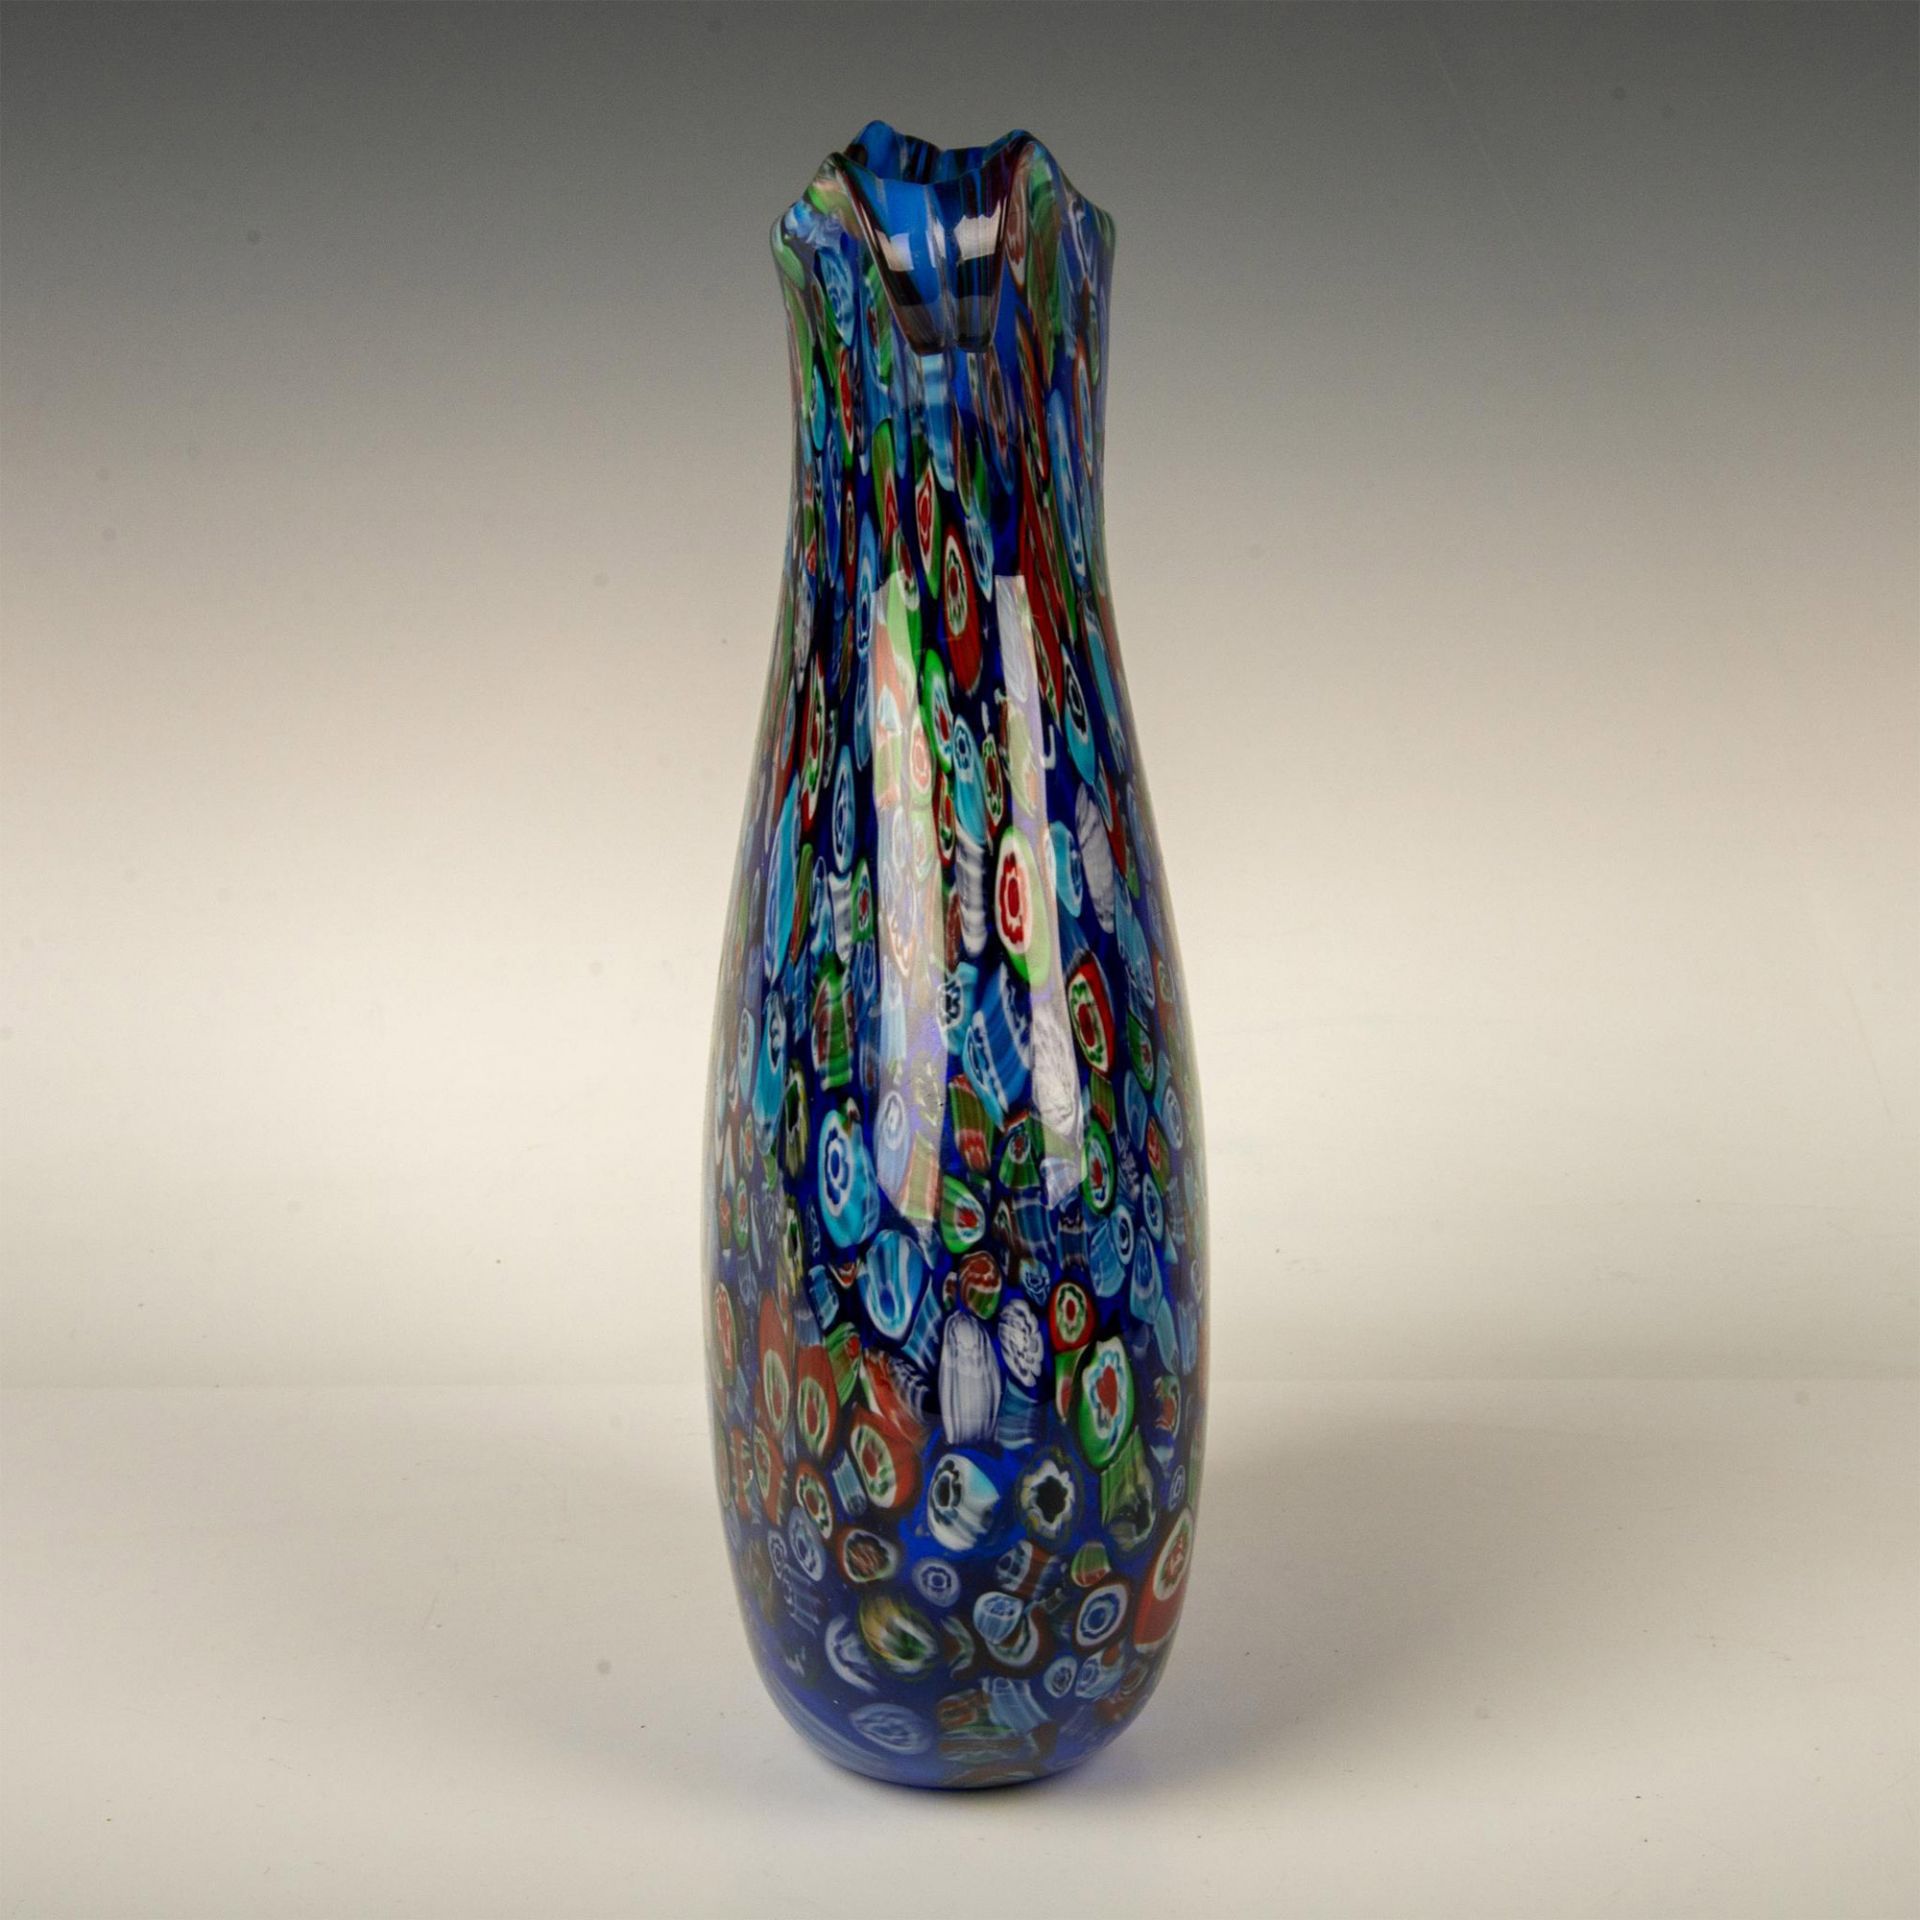 Murano Art Glass Millefiori Vase - Image 2 of 4